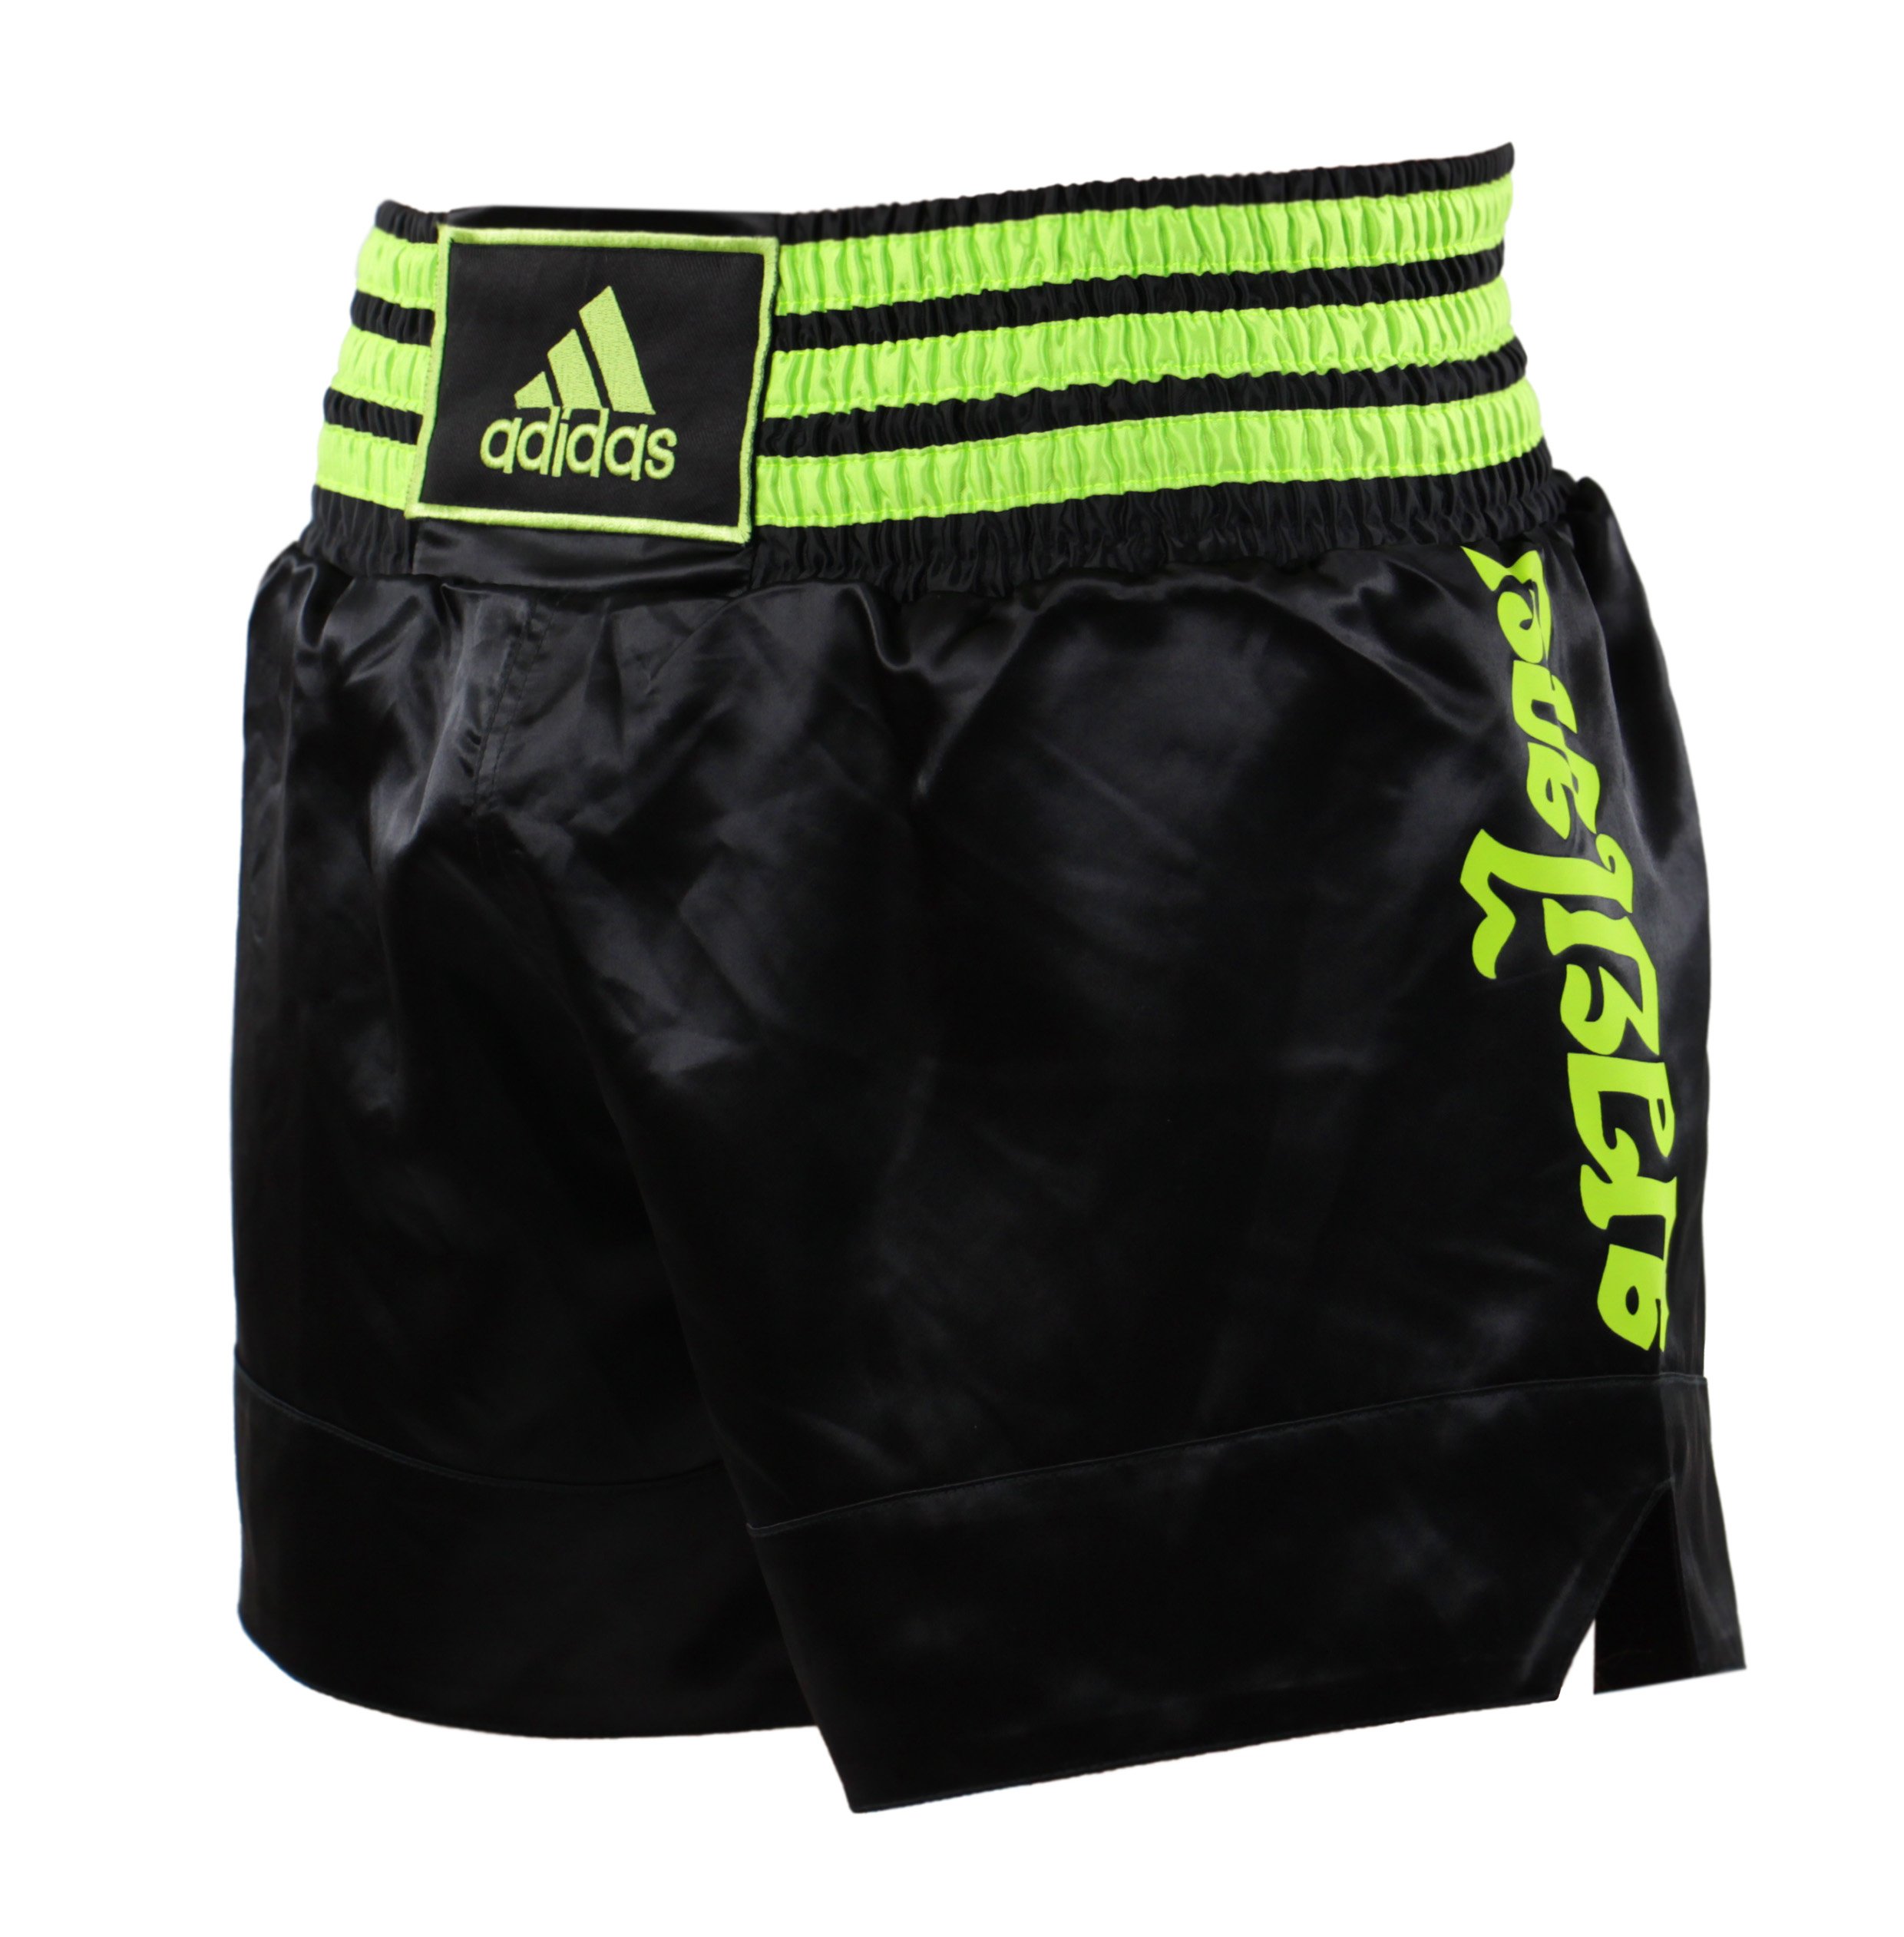 boxing shorts